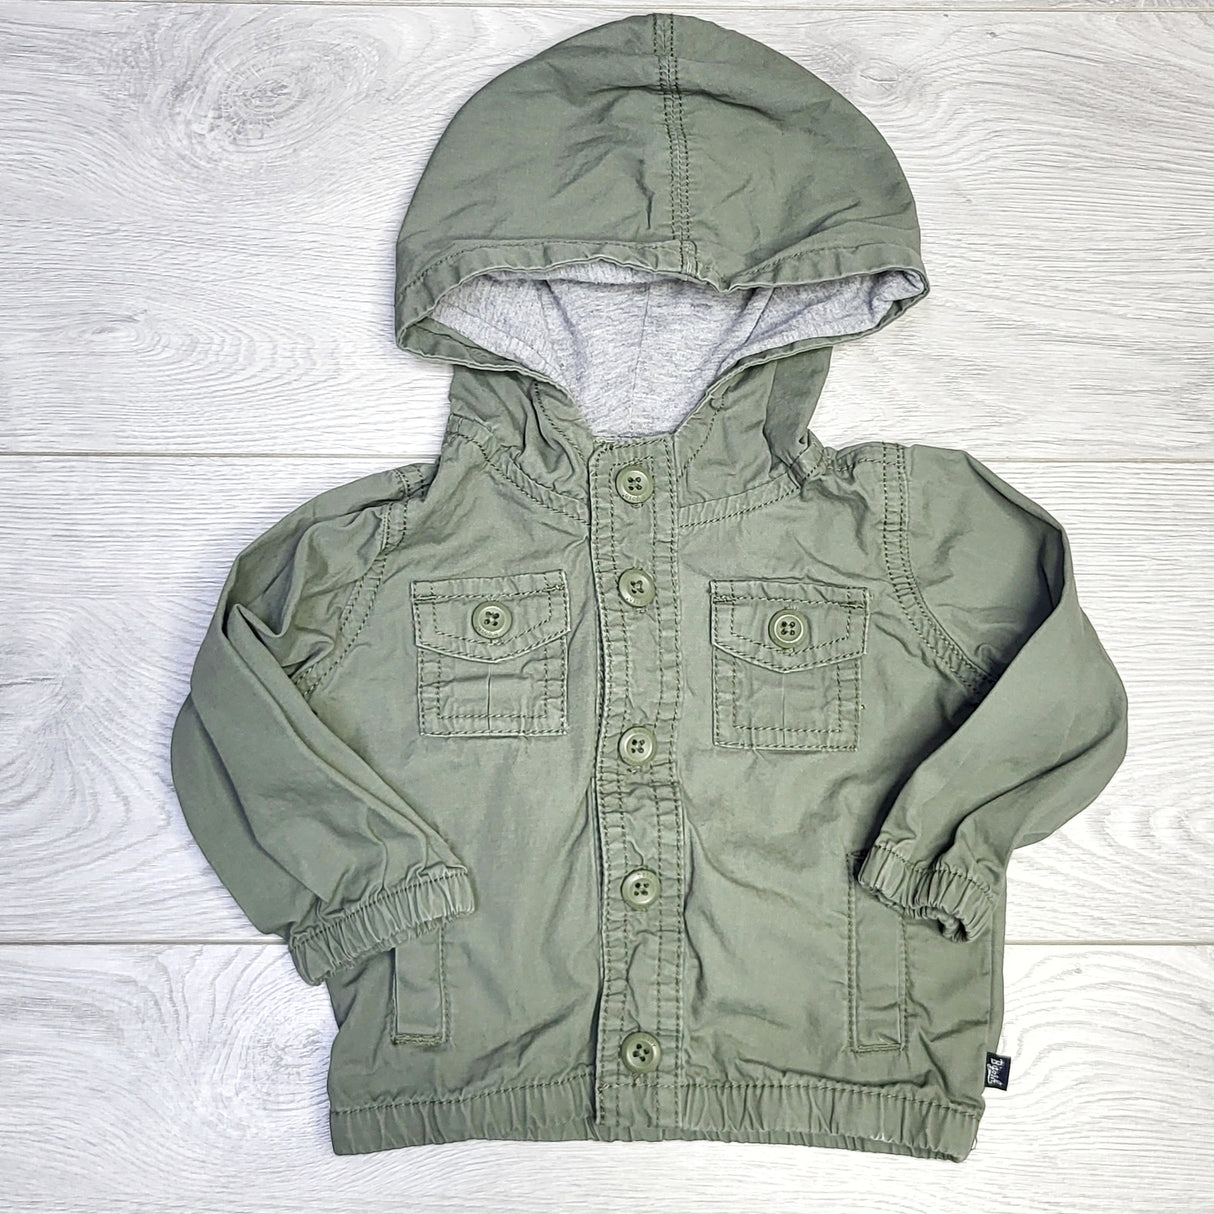 KJHN1 - Baby B'gosh olive green utility jacket. Size 9 months